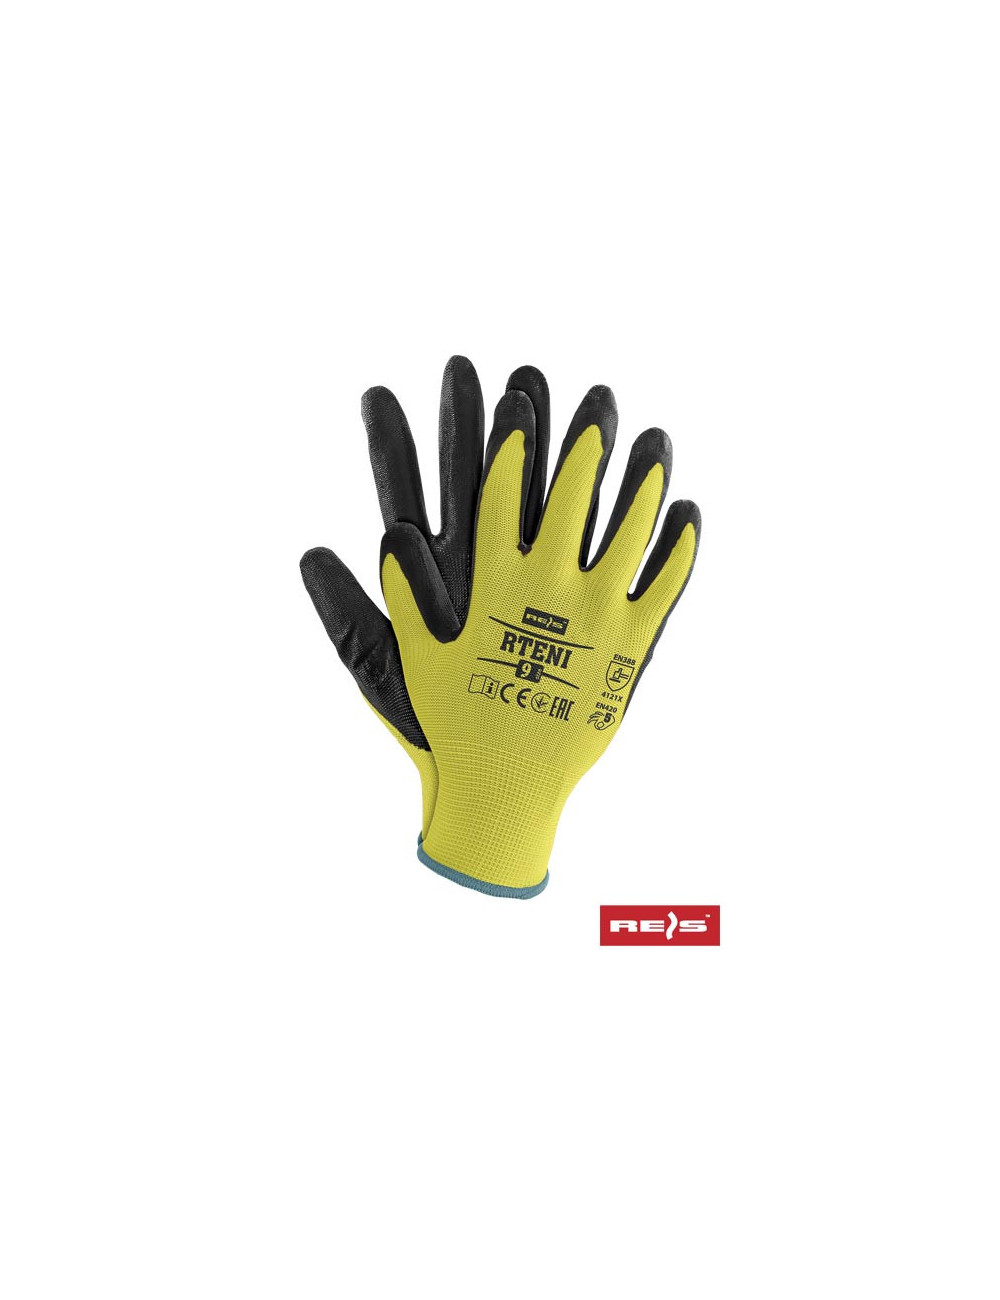 Protective gloves rteni yb yellow-black Reis